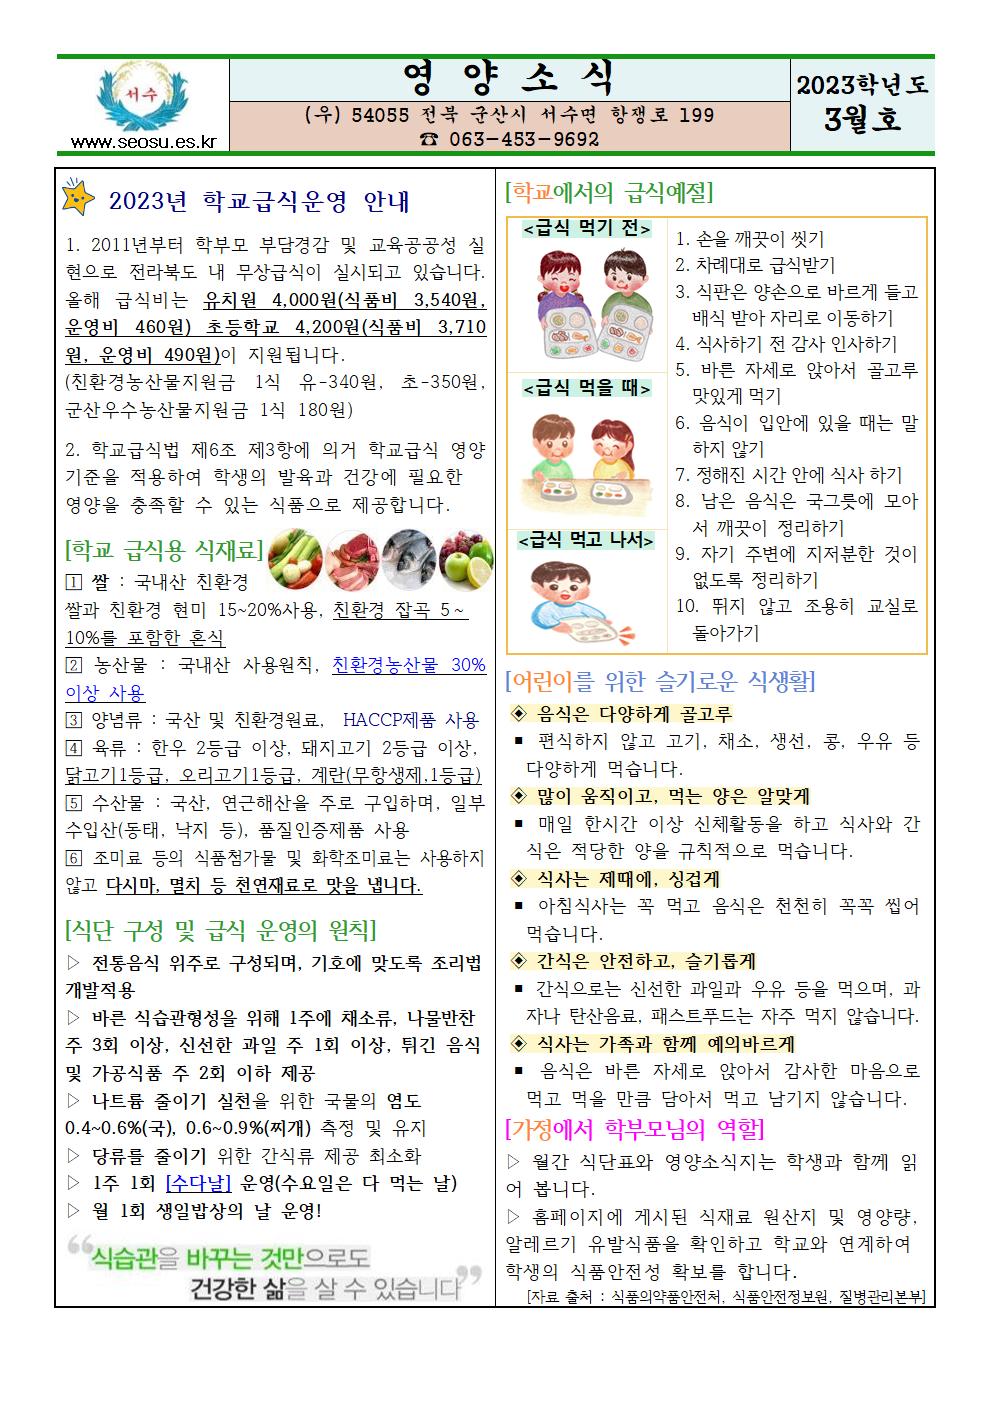 영양소식 및 학교급식식단안내 3월호001